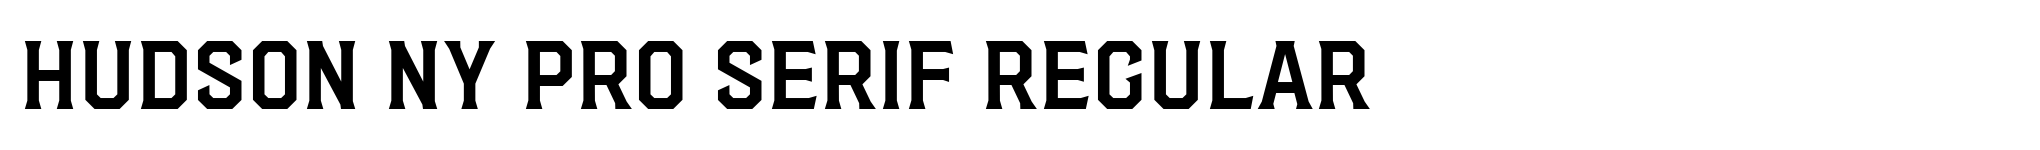 Hudson NY Pro Serif Regular image